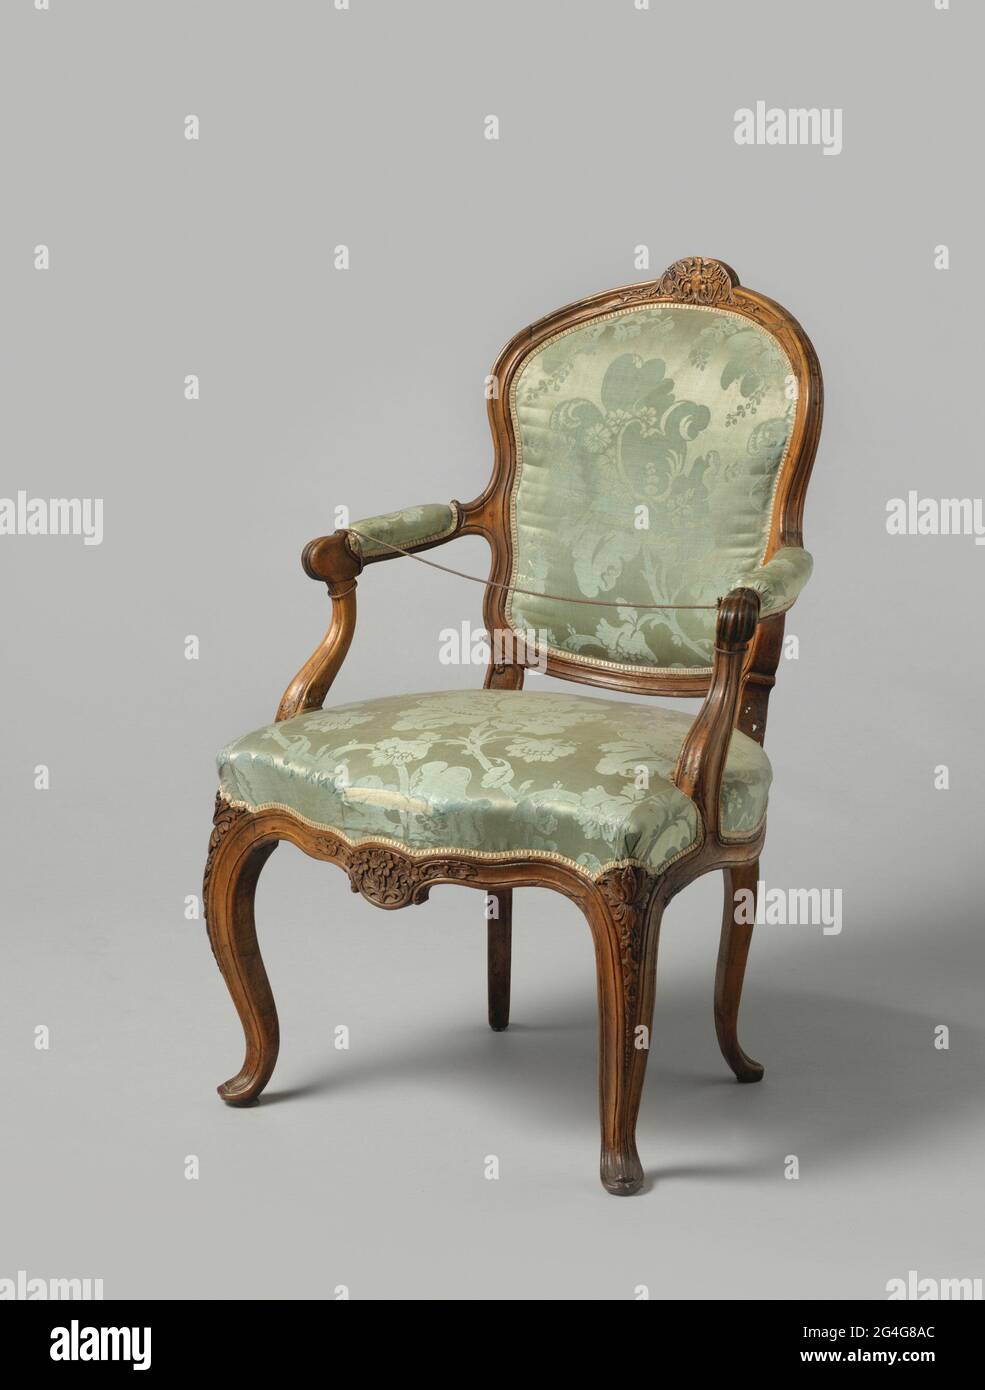 Stuhl, gefüttert mit blauem Damast. S-förmige geschwungene Beine,  geschwungener Vordersitz mit Blumenarbeit .. Mahagoni (?) Sessel, bedeckt  mit blauem Damast aus dem 18. Jahrhundert, aus einem Kleid. Die überhöht  platzierten gestreckten S-förmigen